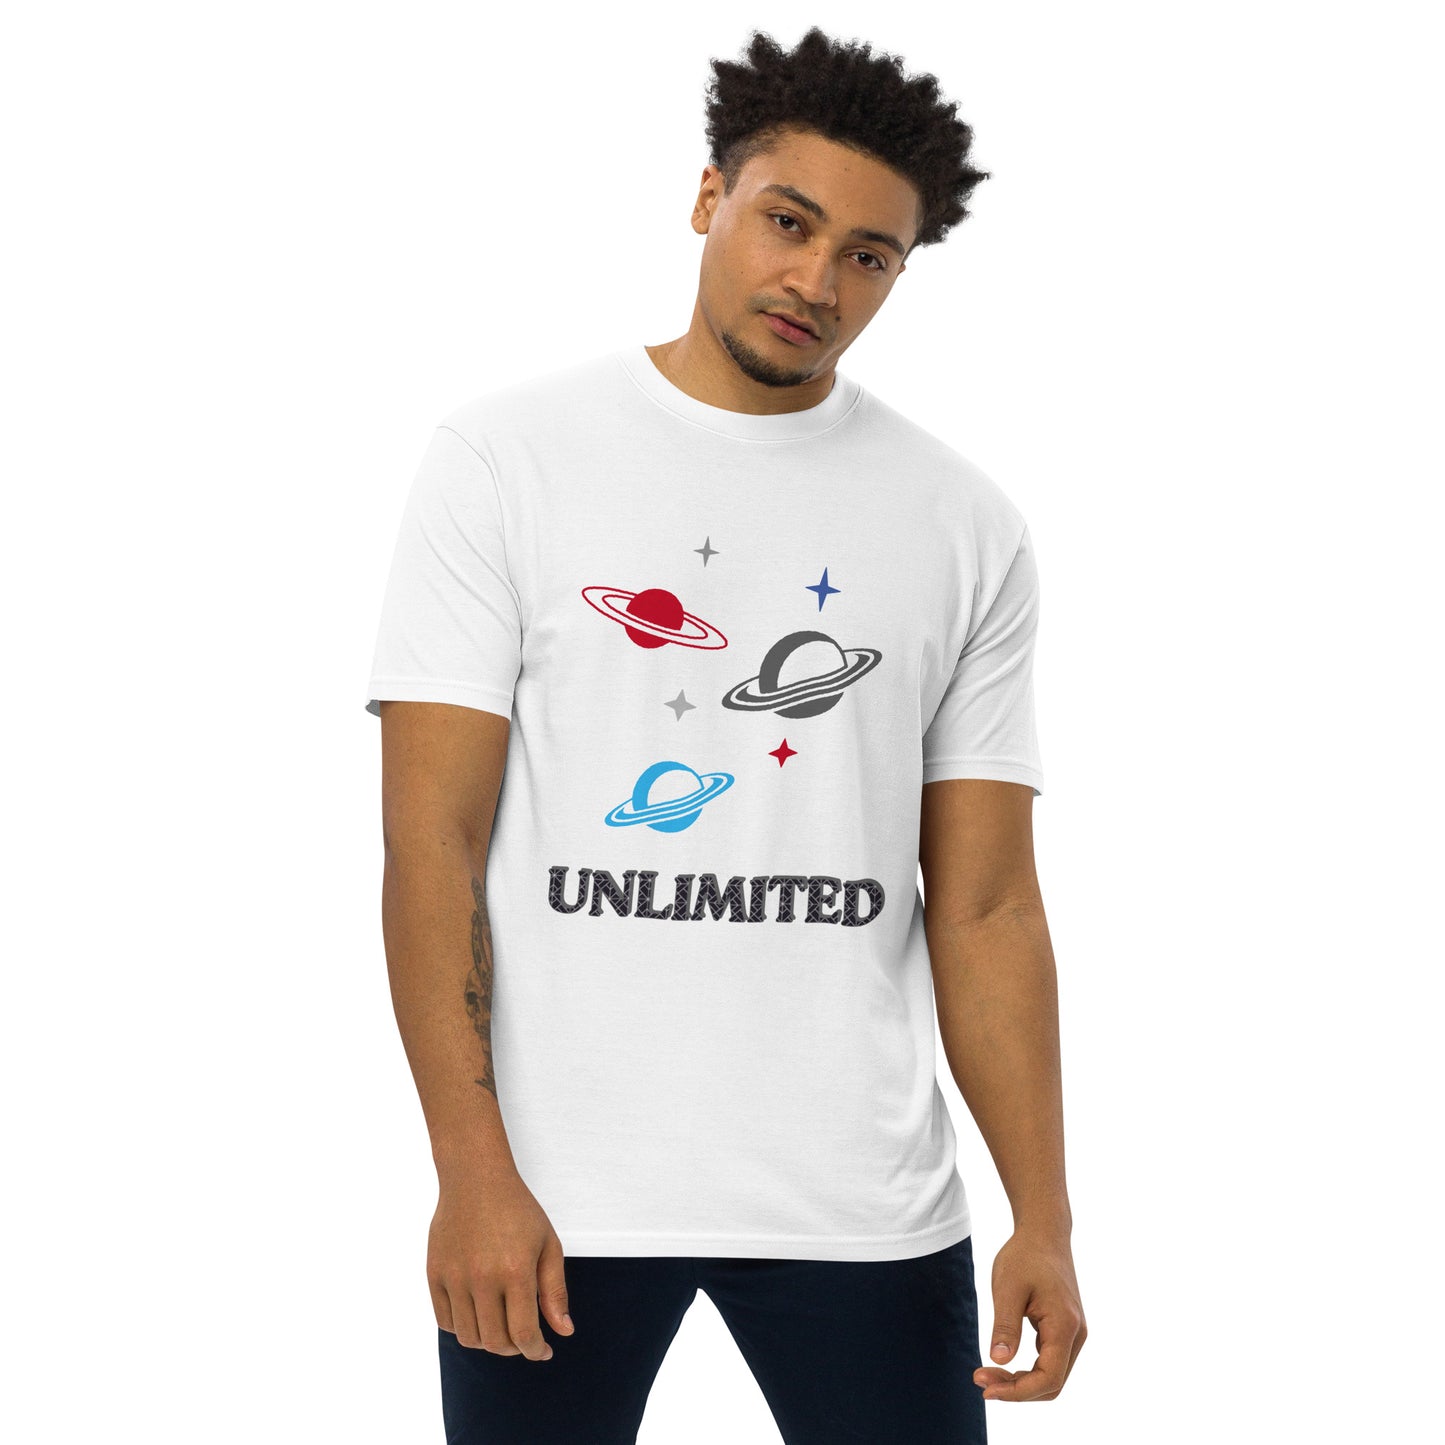 Unlimited - Men’s Premium Tee